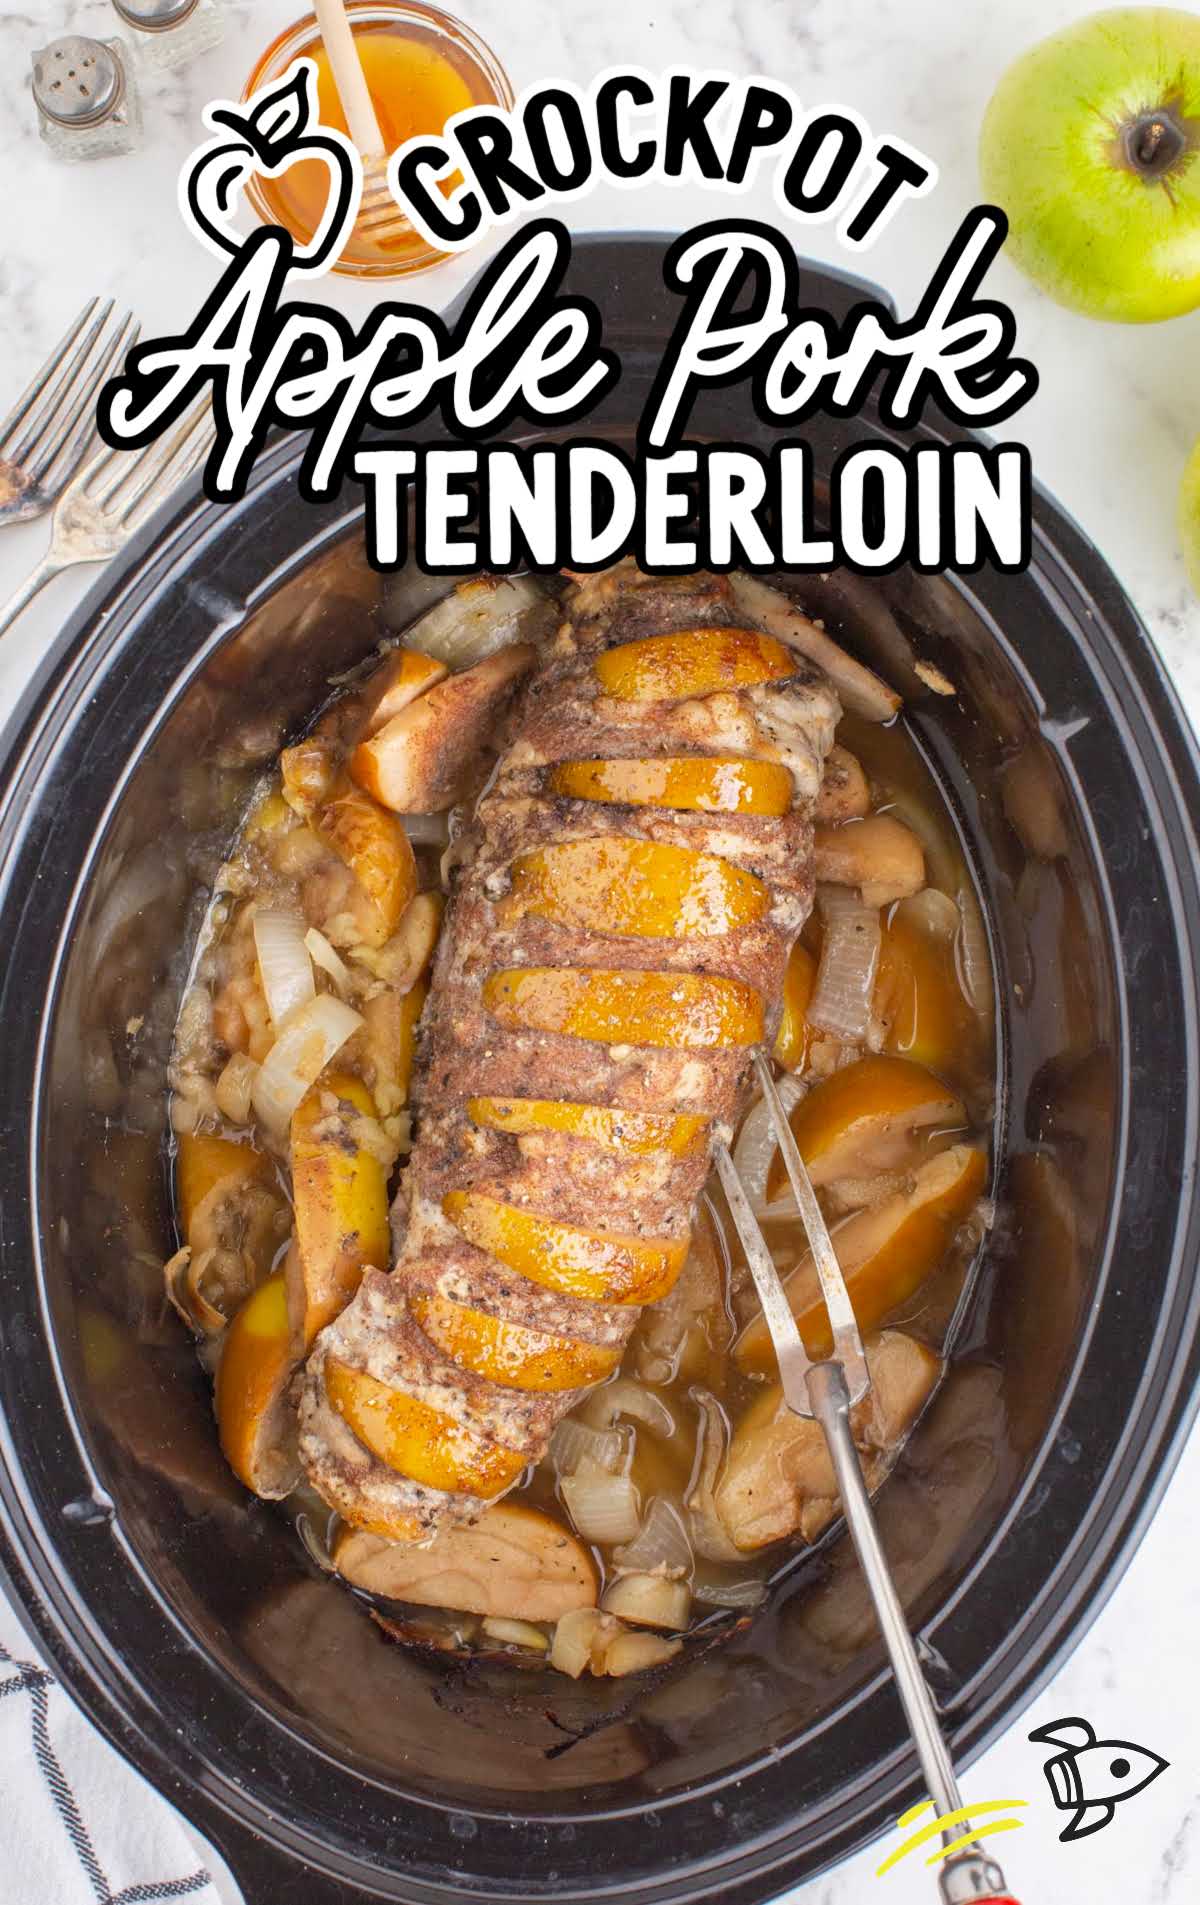 pork tenderloin in a crockpot